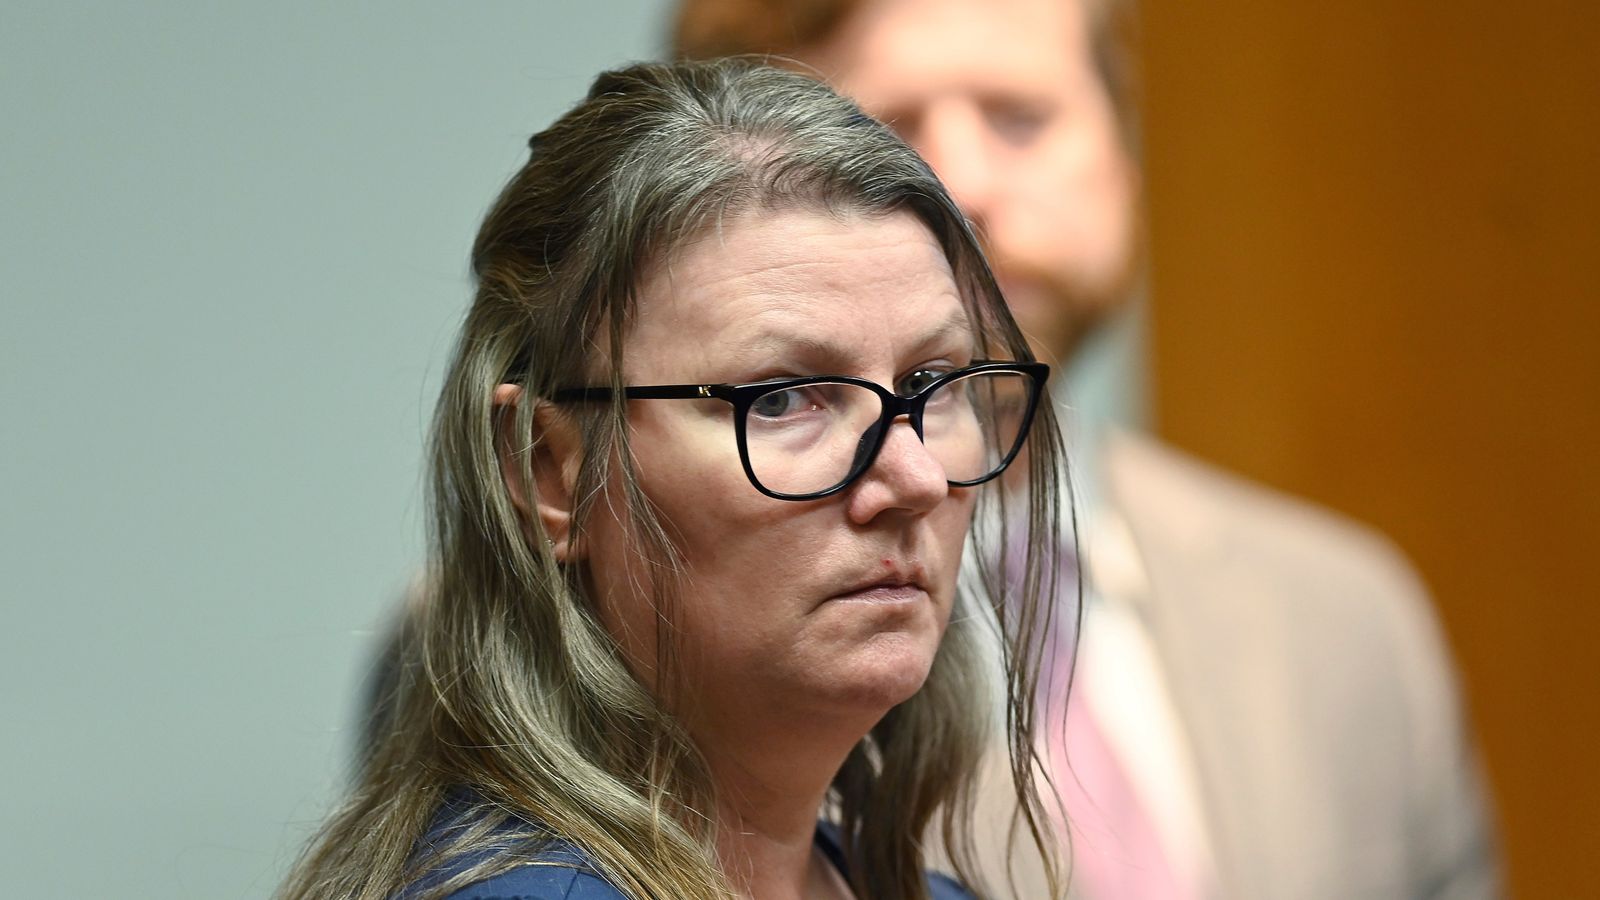 Mother of US school shooter convicted in landmark case